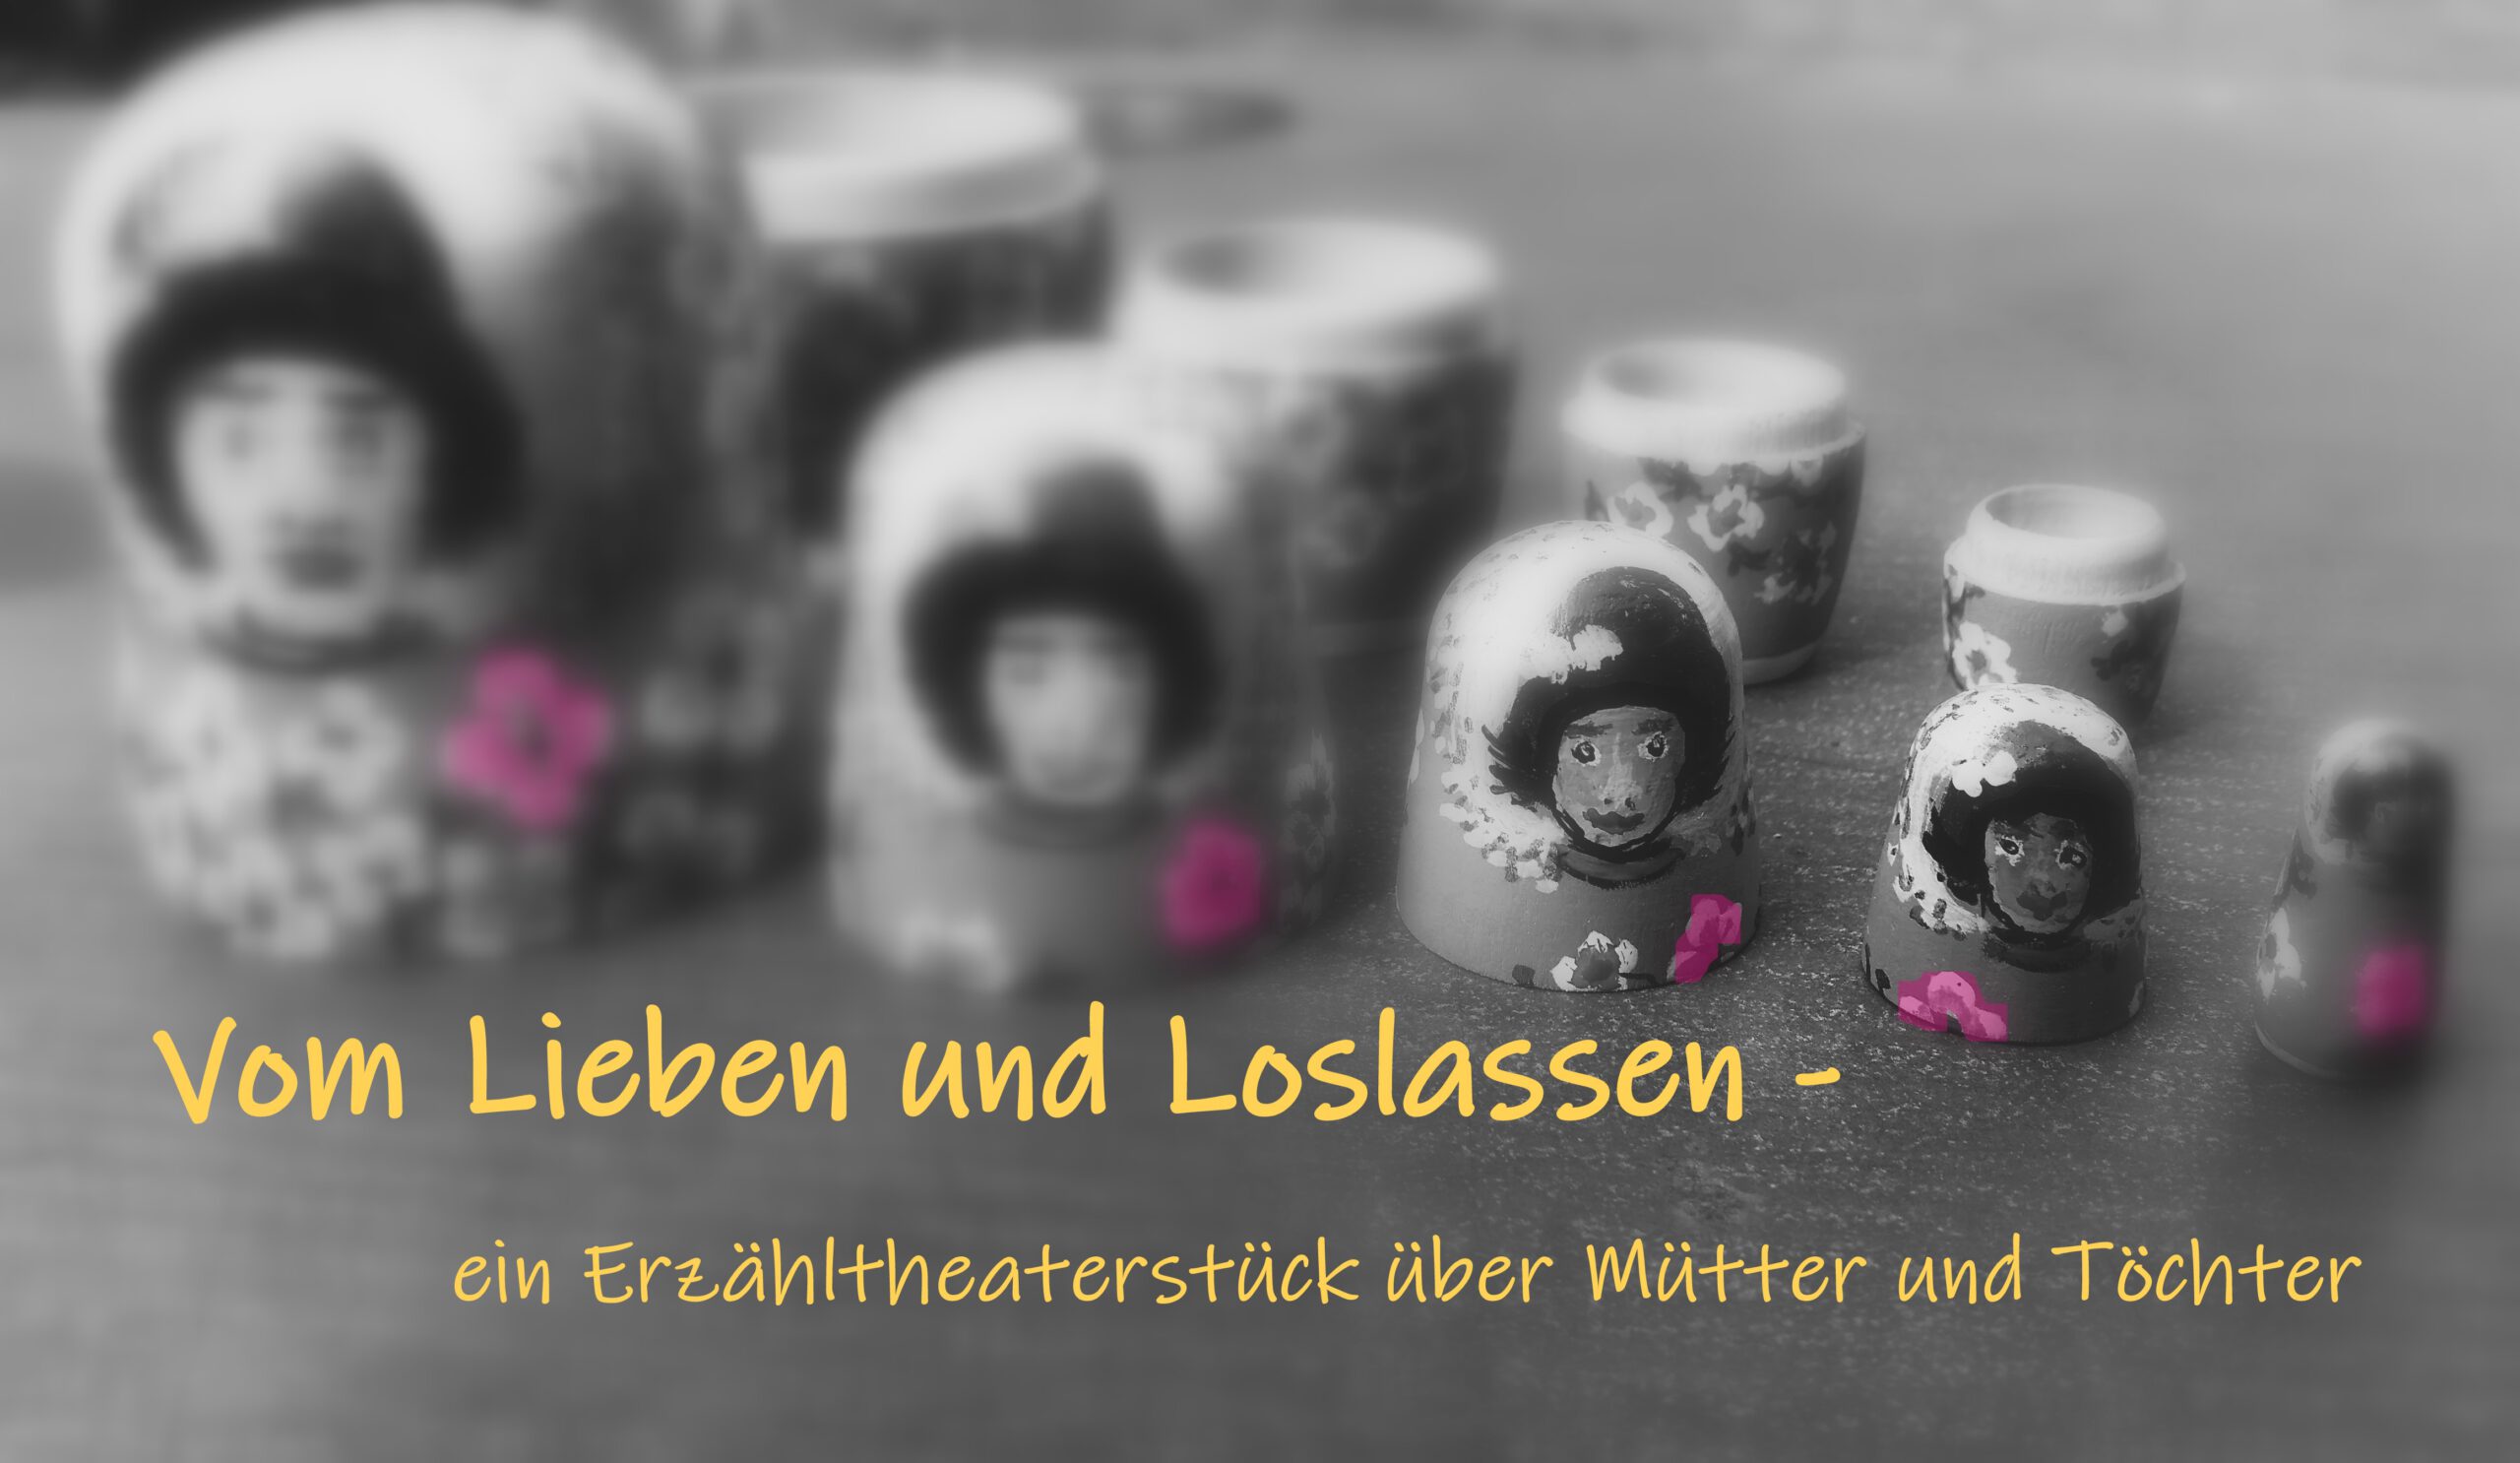 Vom Lieben und Loslassen - ein Erzähltheaterstück über Mütter und Töchter von und mit Birgit Klinksieck